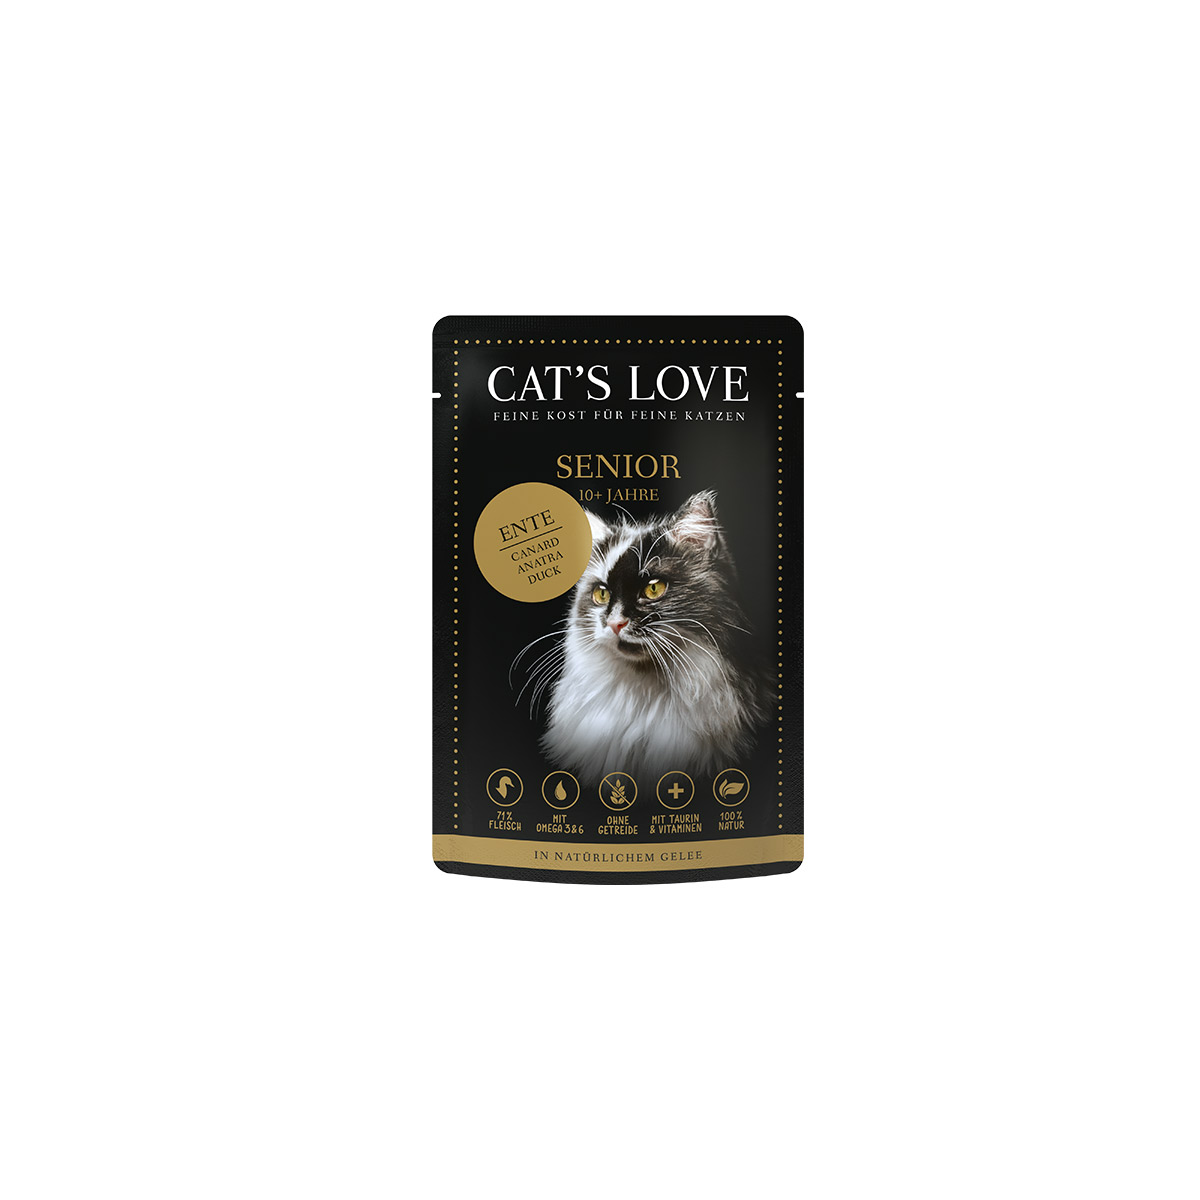 Cat's Love Senior, mokré krmivo s kachní příchutí